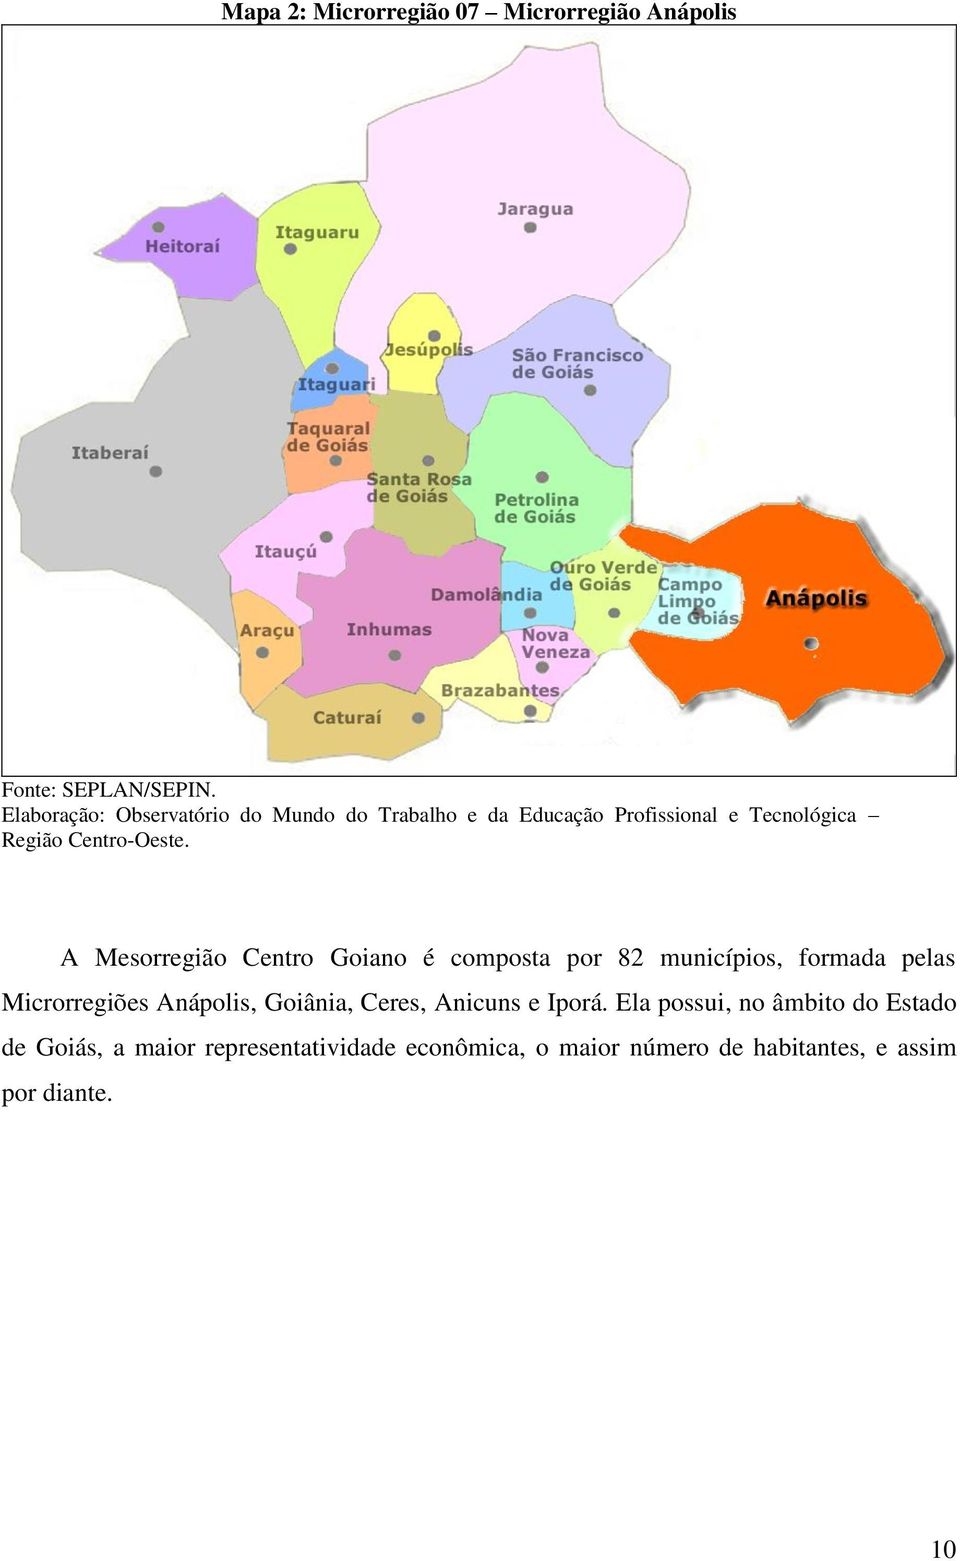 A Mesorregião Centro Goiano é composta por 82 municípios, formada pelas Microrregiões Anápolis, Goiânia,